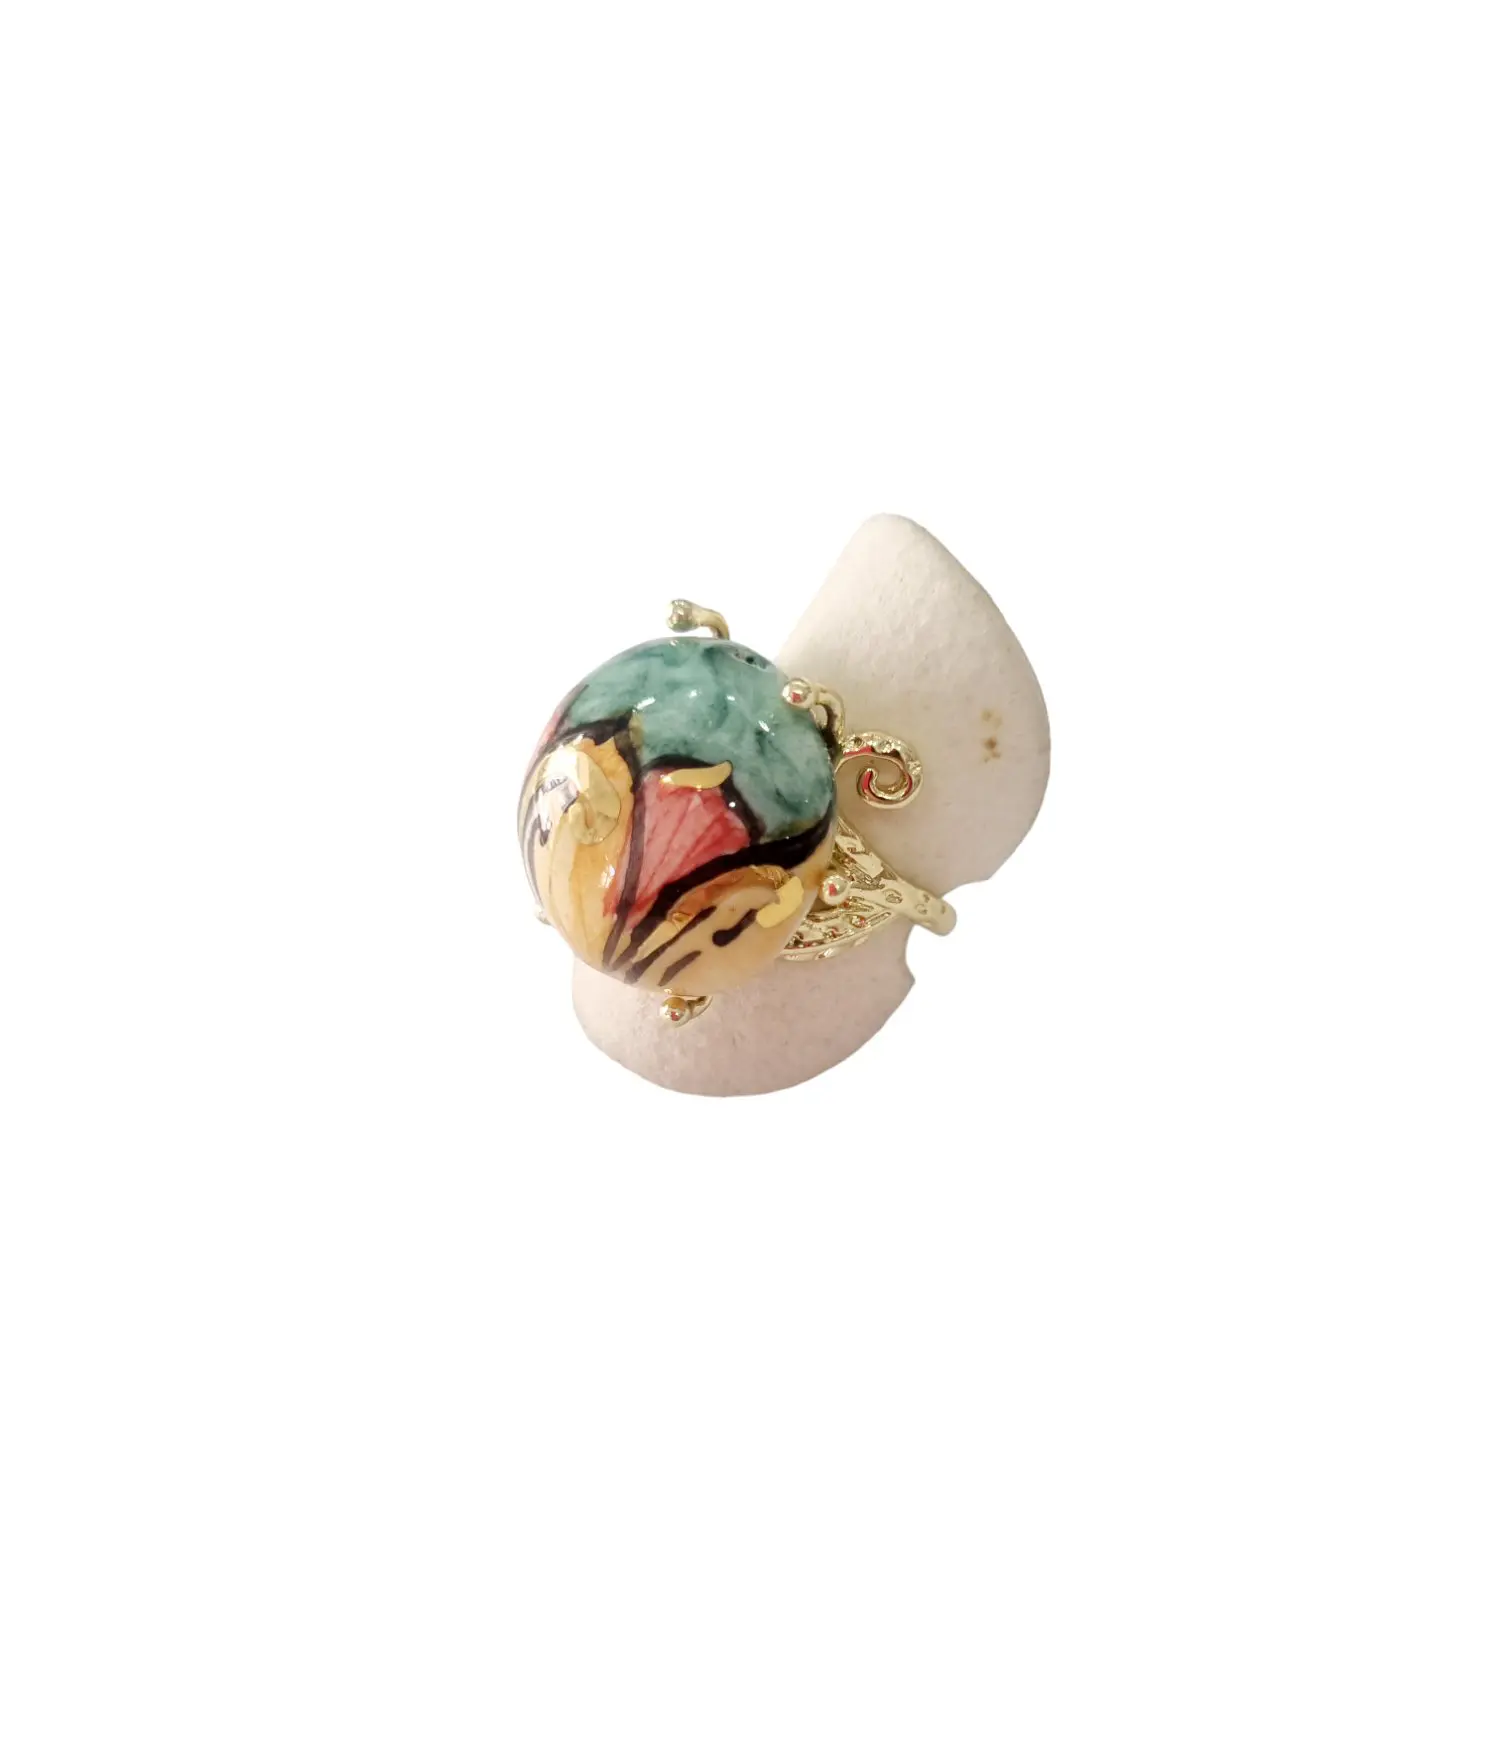 Anello regolabile su base in ottone con fiori dipinti su ceramica di Caltagirone.